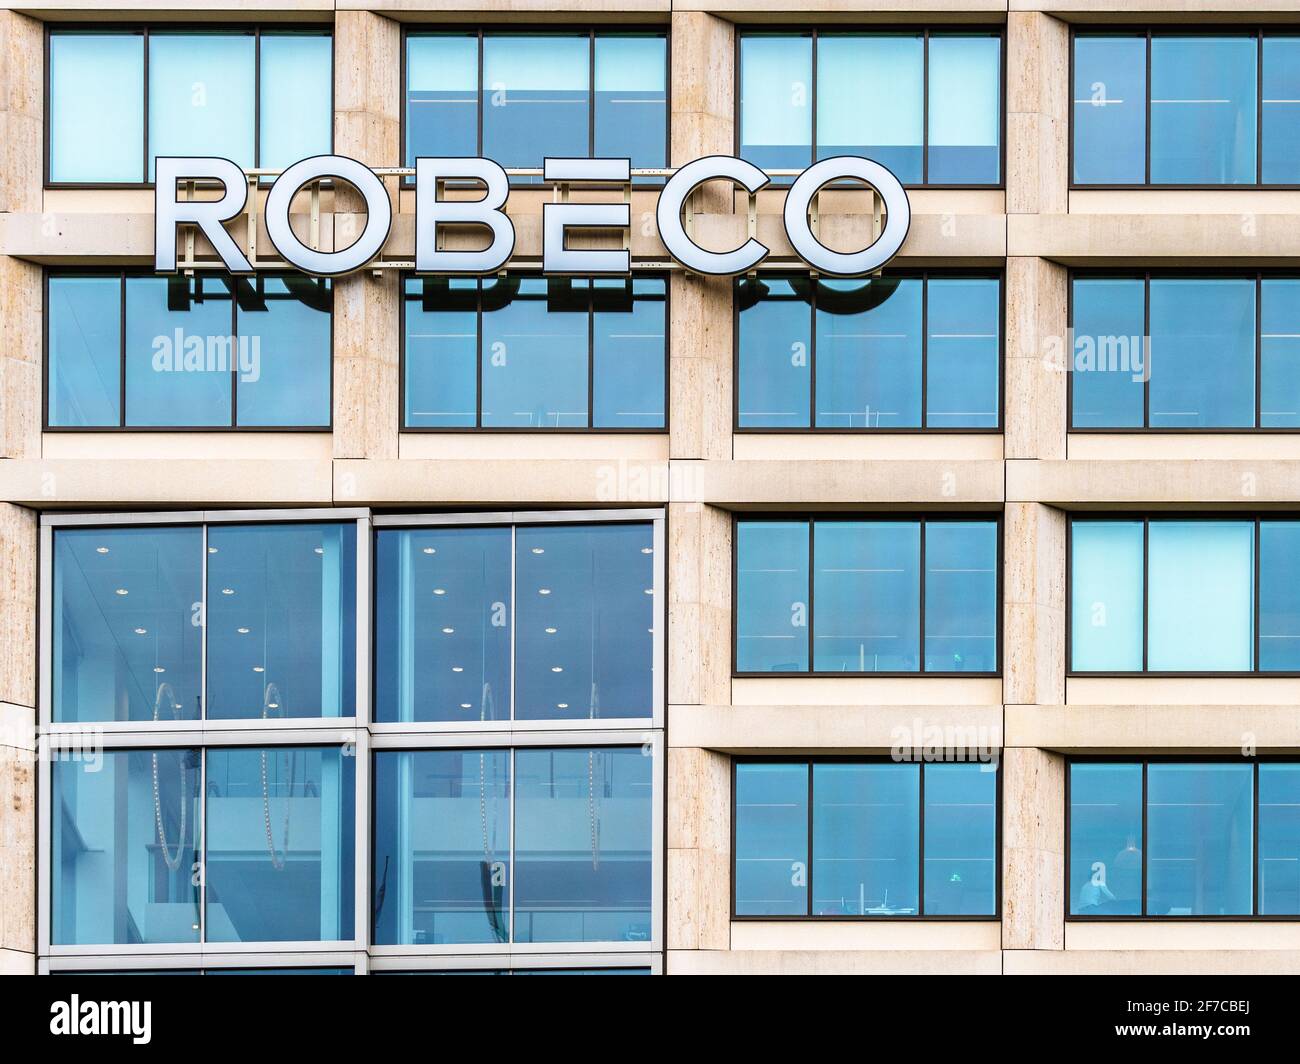 Robeco HQ Rotterdam - Robeco è una società olandese di servizi finanziari specializzata in Asset Management, fondata nel 1929 è di proprietà di Orix Japan Foto Stock